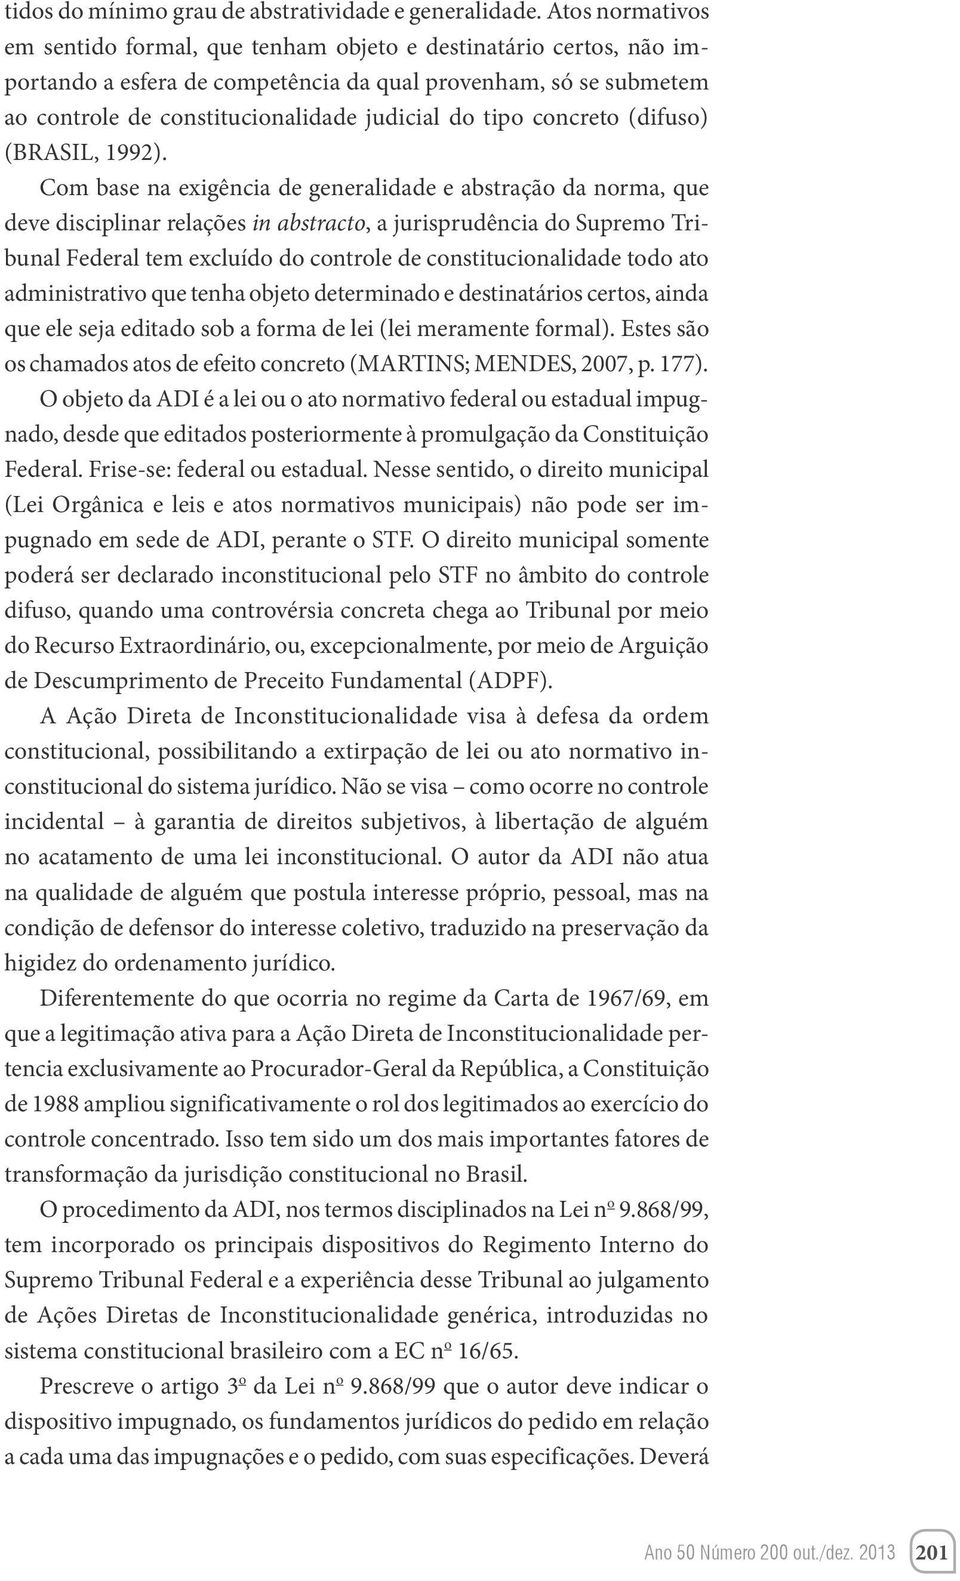 tipo concreto (difuso) (BRASIL, 1992).